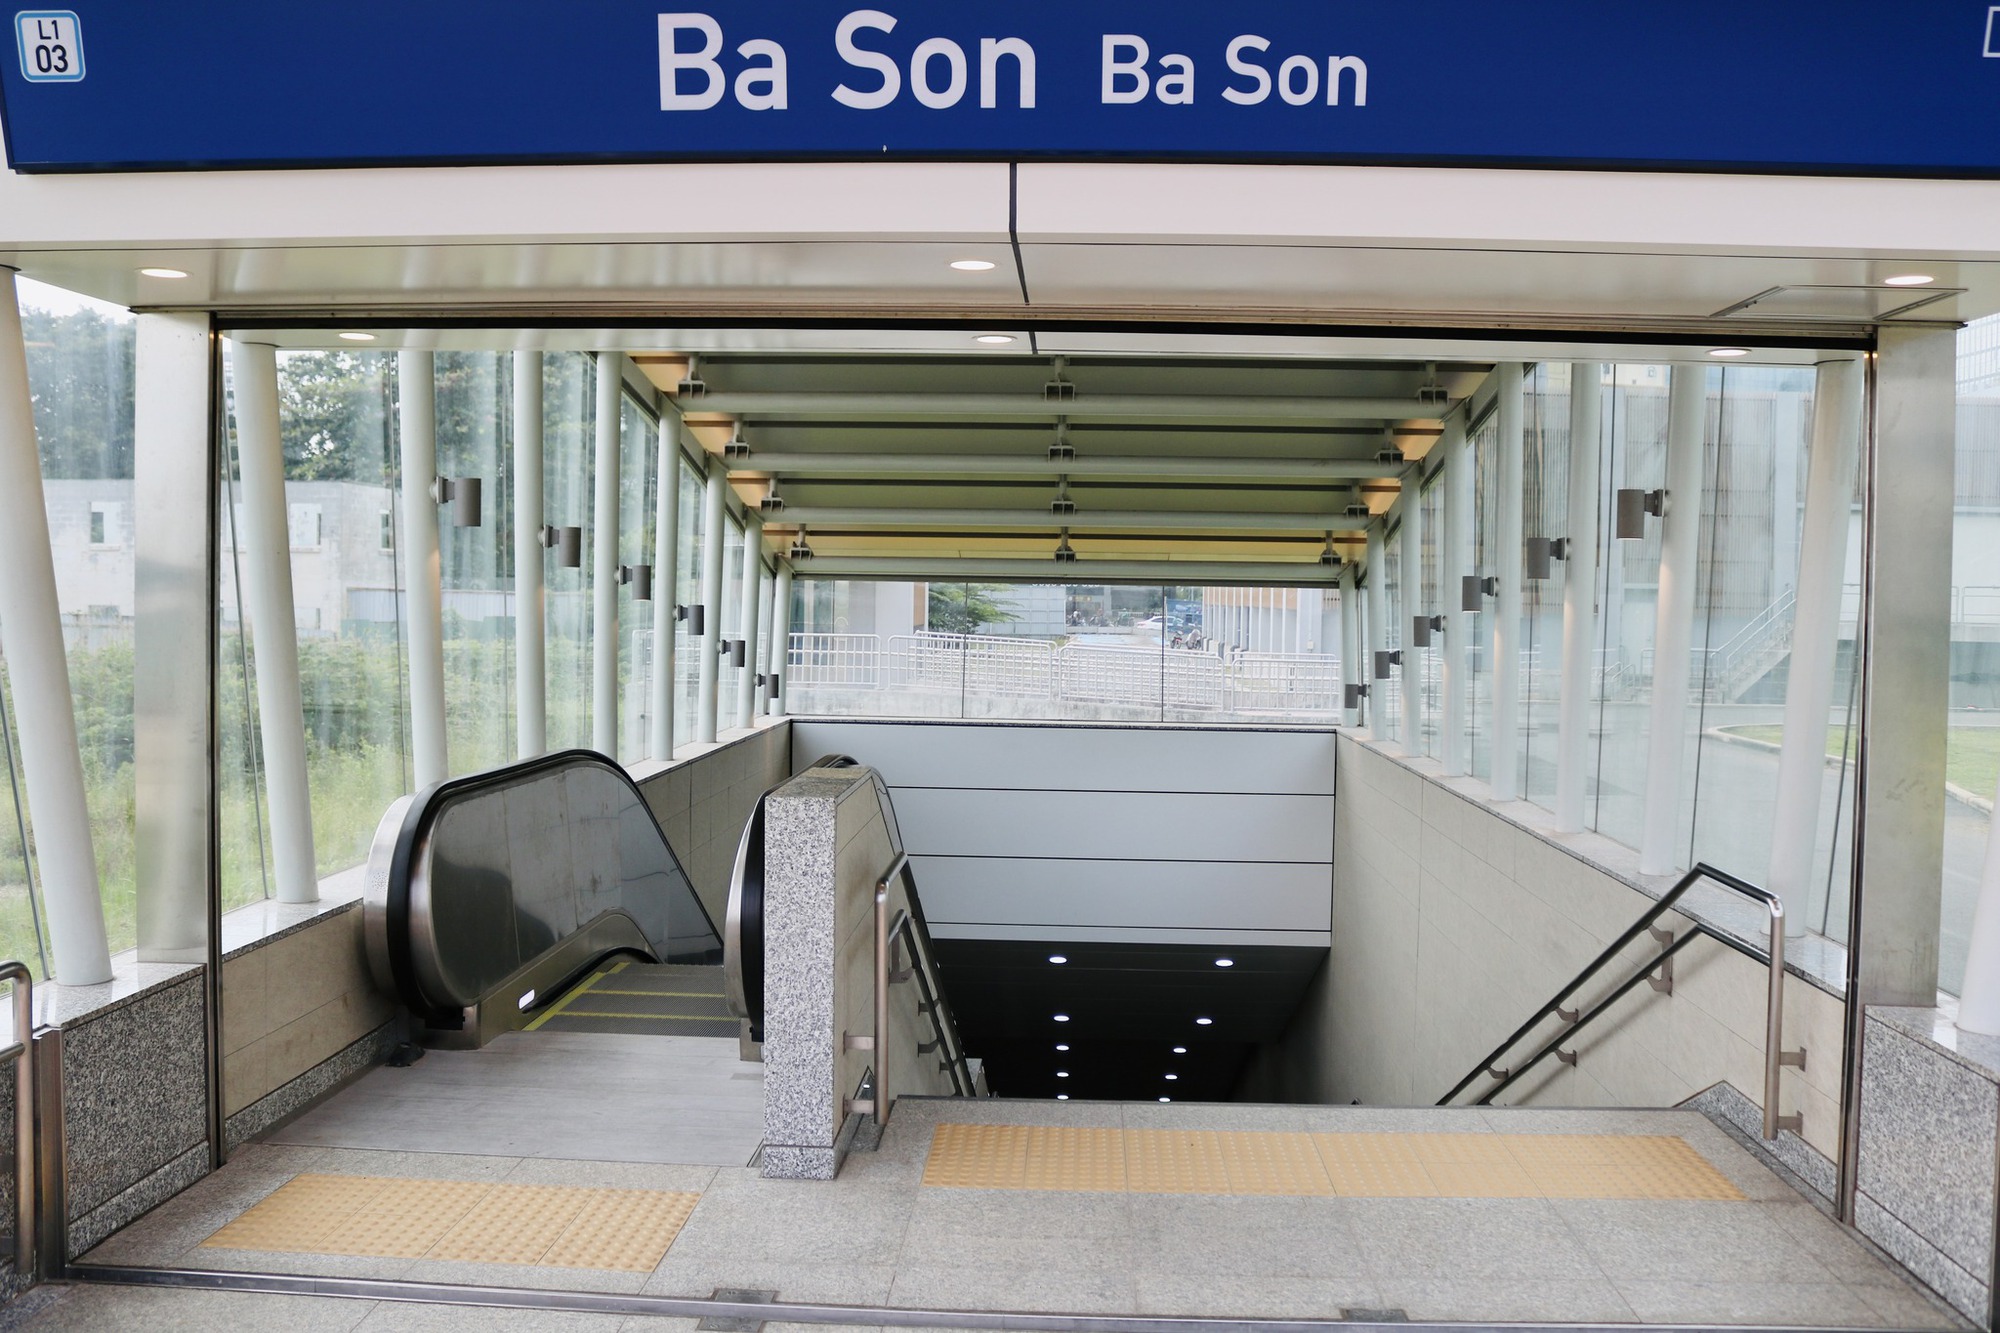 Thêm ga ngầm metro 'khoe' diện mạo hoàn thiện sau thập kỉ thi công - Ảnh 1.